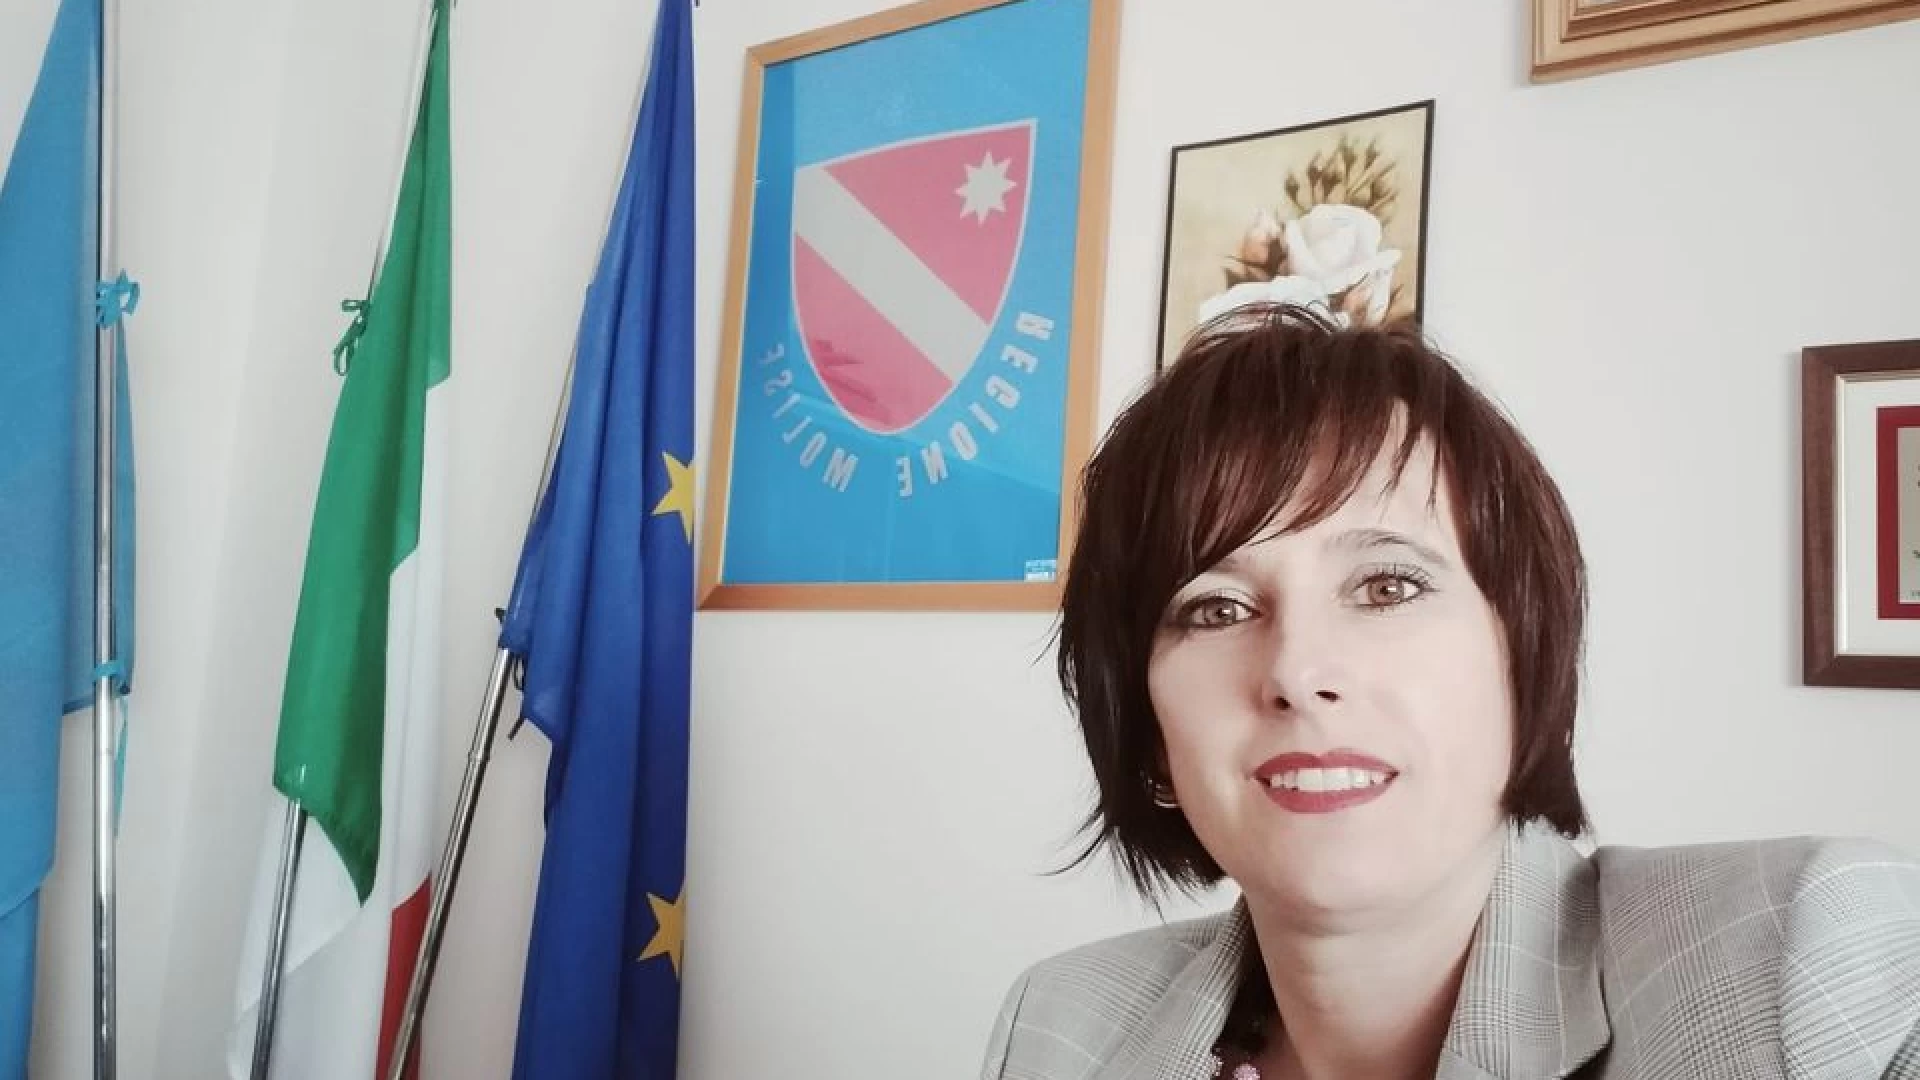 App ‘Board Support’ per Forze dell’Ordine, Aida Romagnuolo (FdI): “subito convenzione tra Regione Molise e Trenitalia”